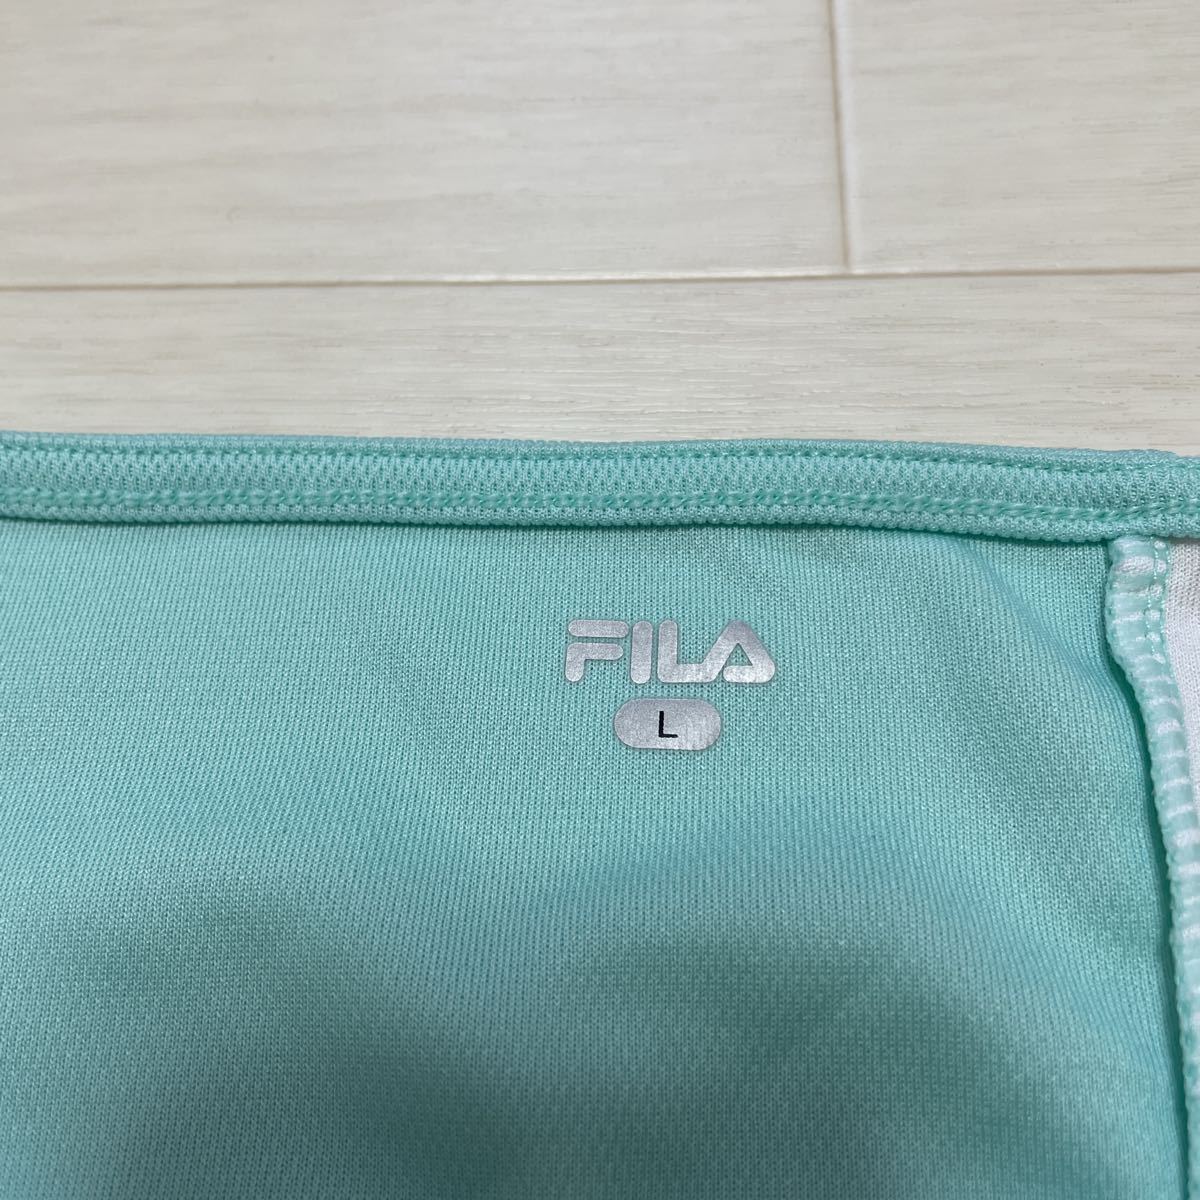  filler FILA теннис одежда женский One-piece желтый mint green размер L прекрасный товар 